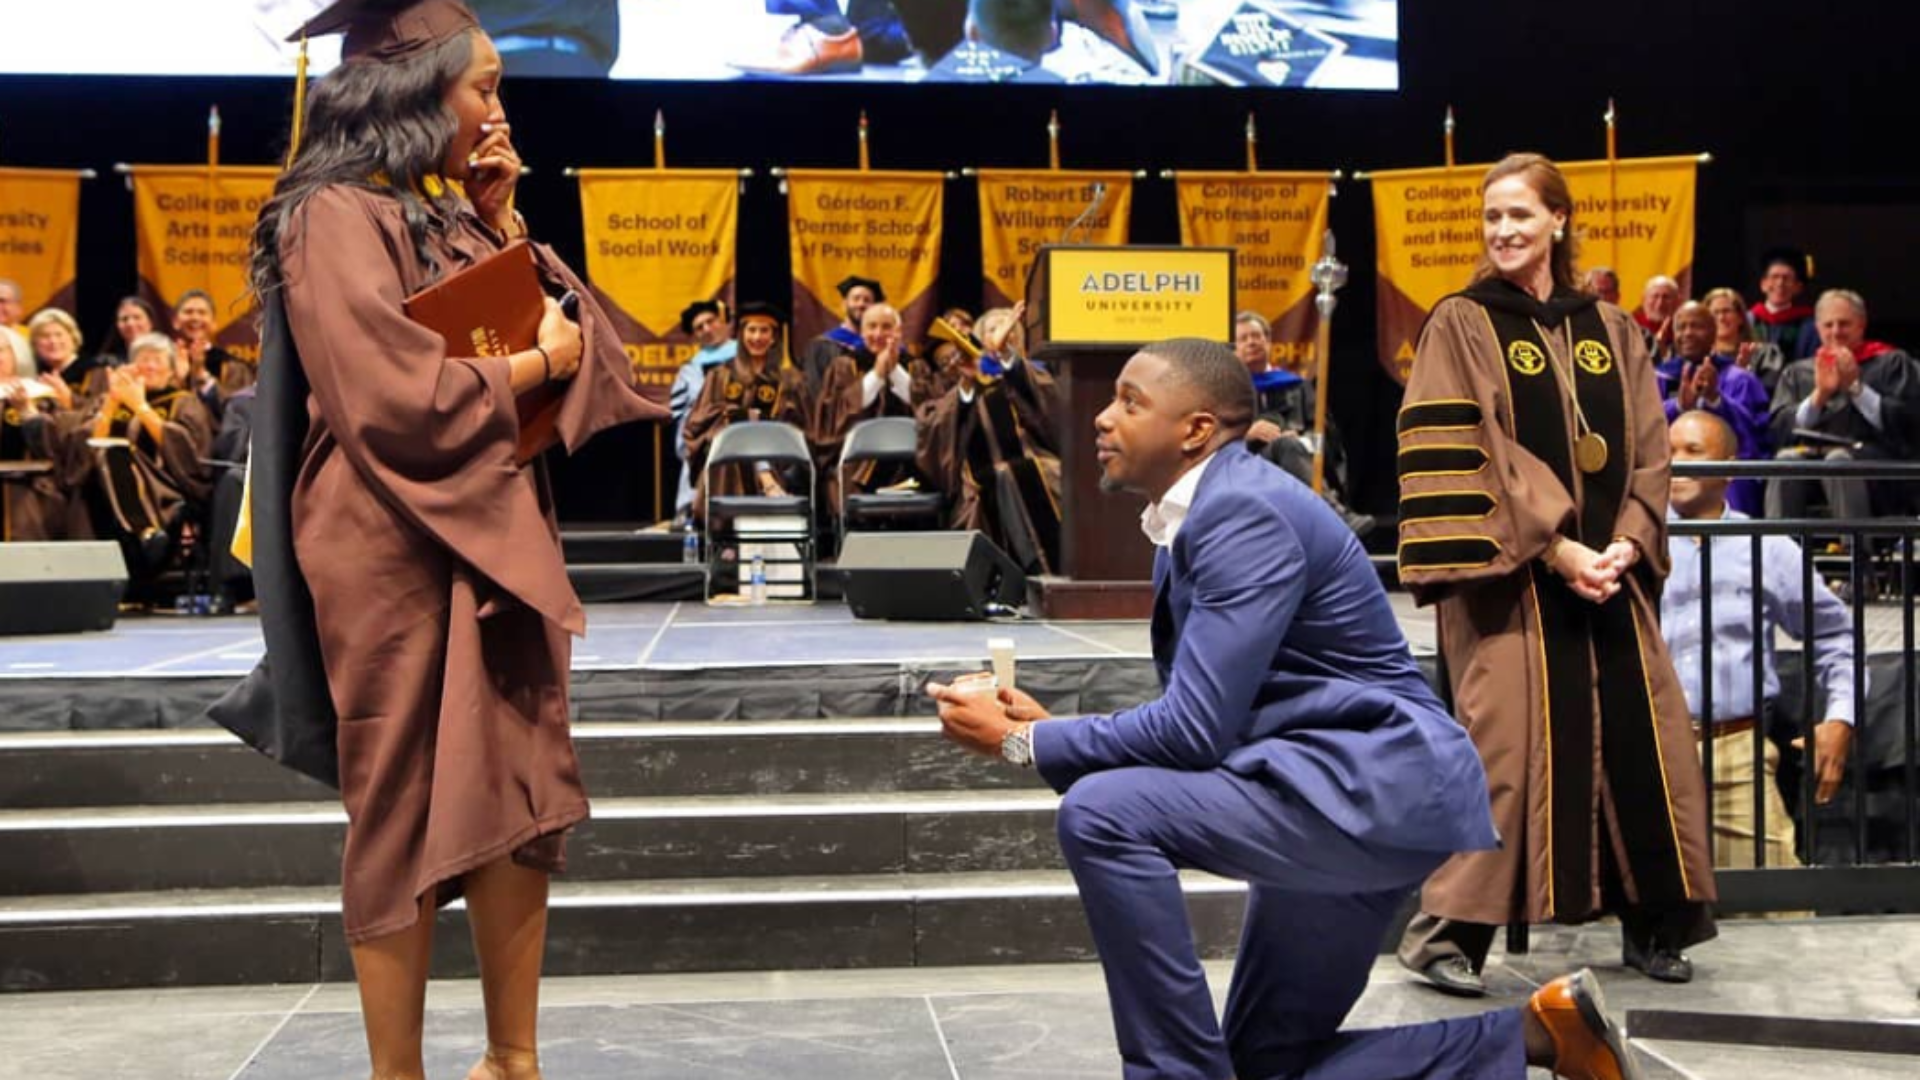 This Man's Graduation Proposal Got A Standing Ovation